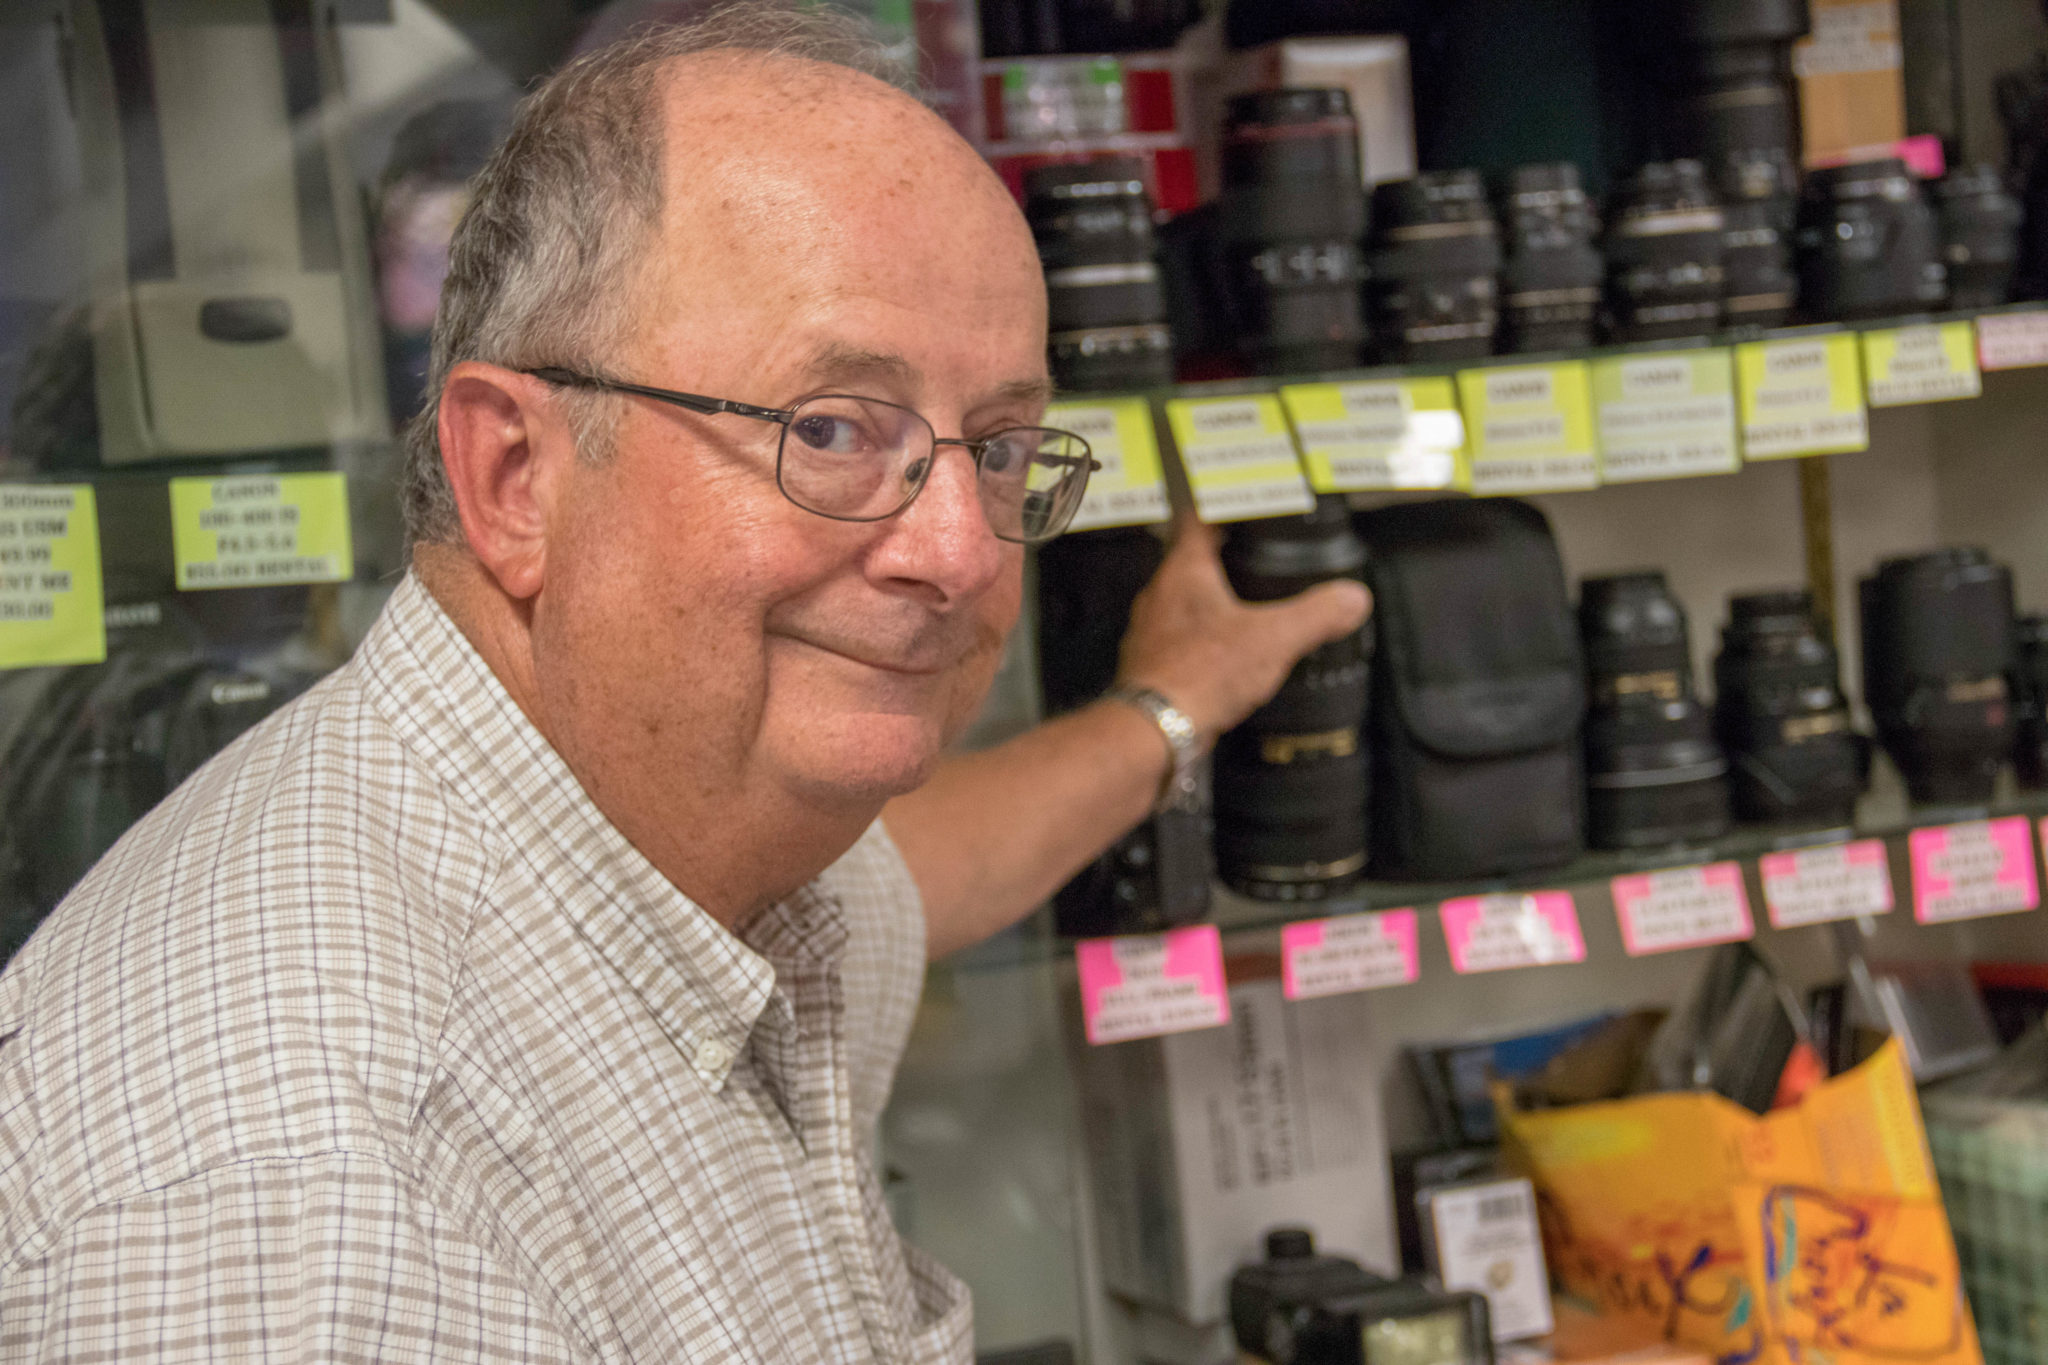 Owner of Glens Fair Price Store reaching for camera lenses